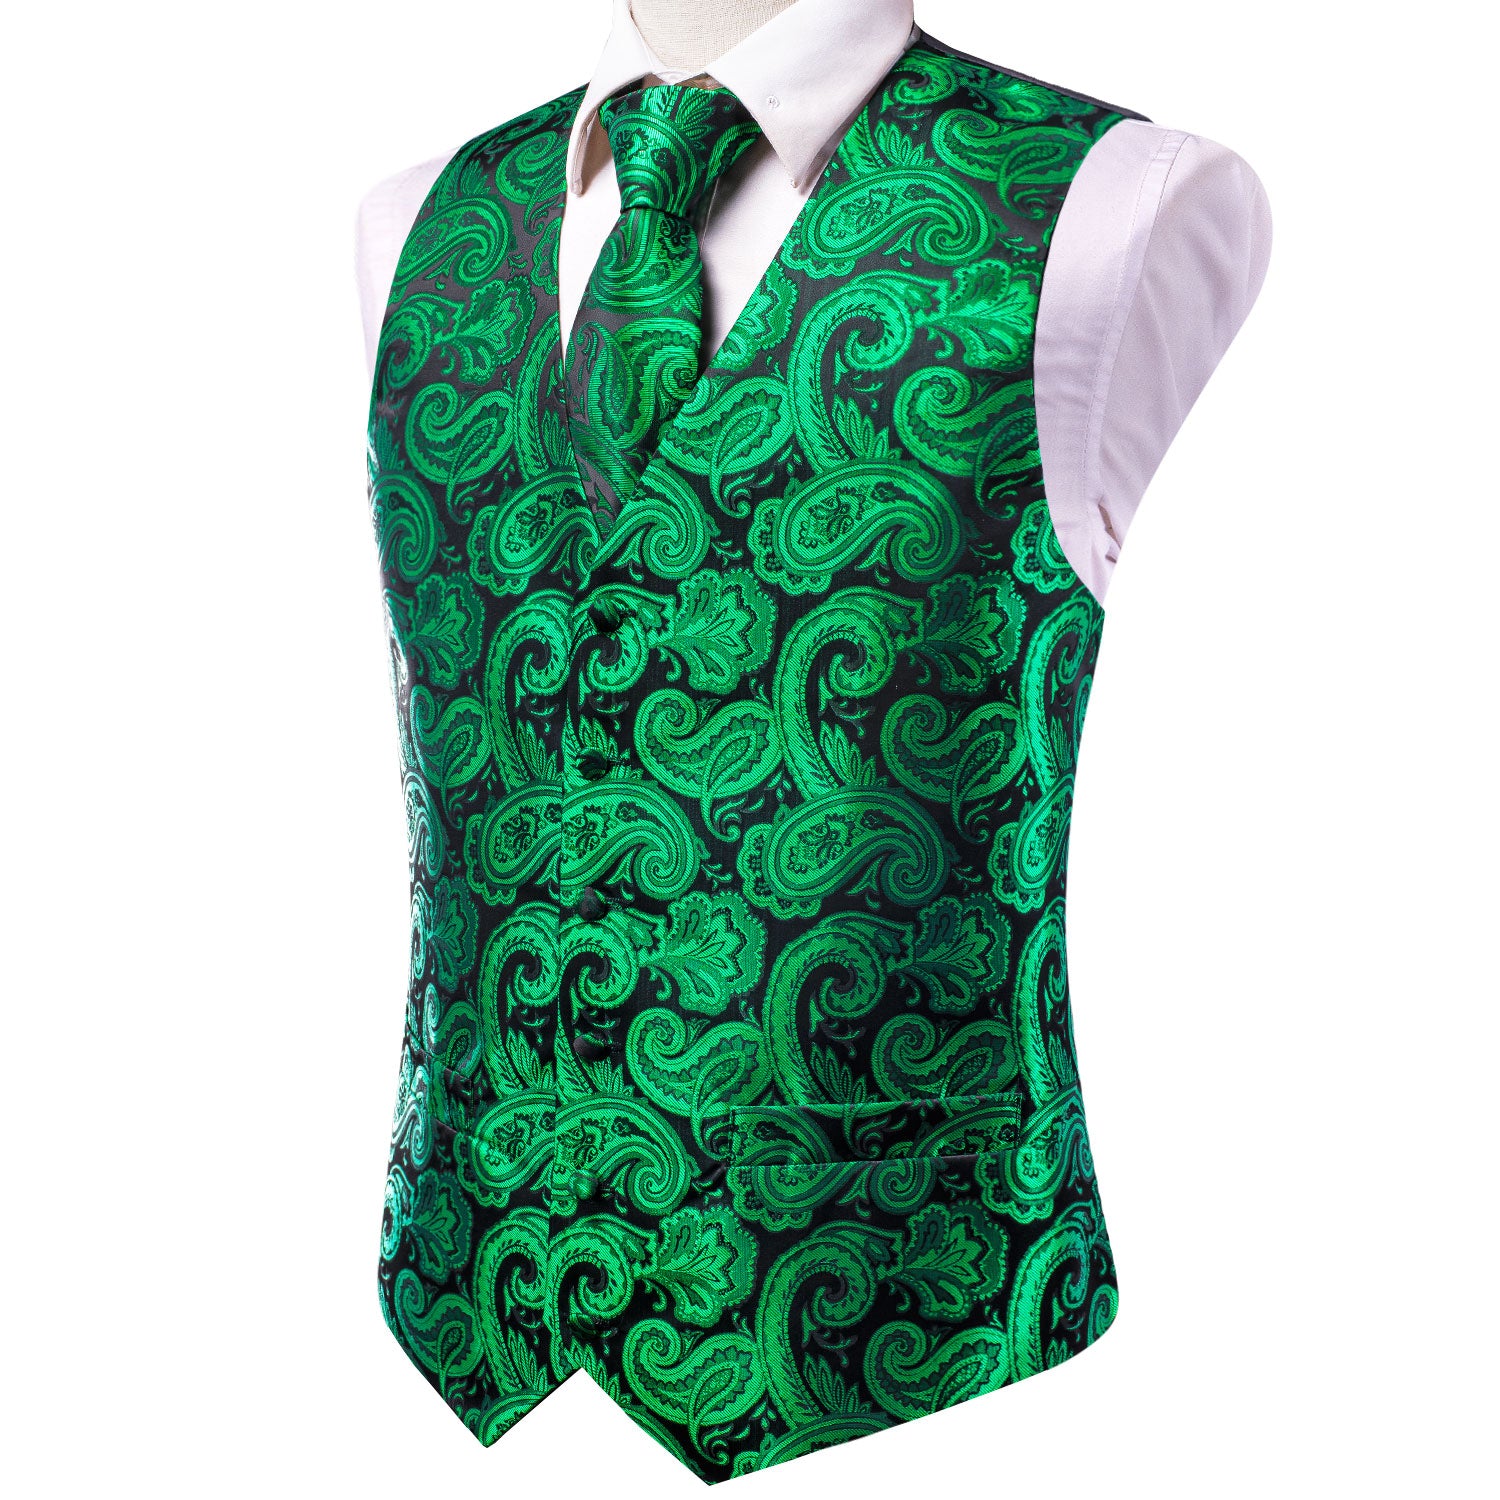 Luxury Green Black Paisley Silk Men's Vest Hanky Cufflinks Tie Set Waistcoat Suit Set